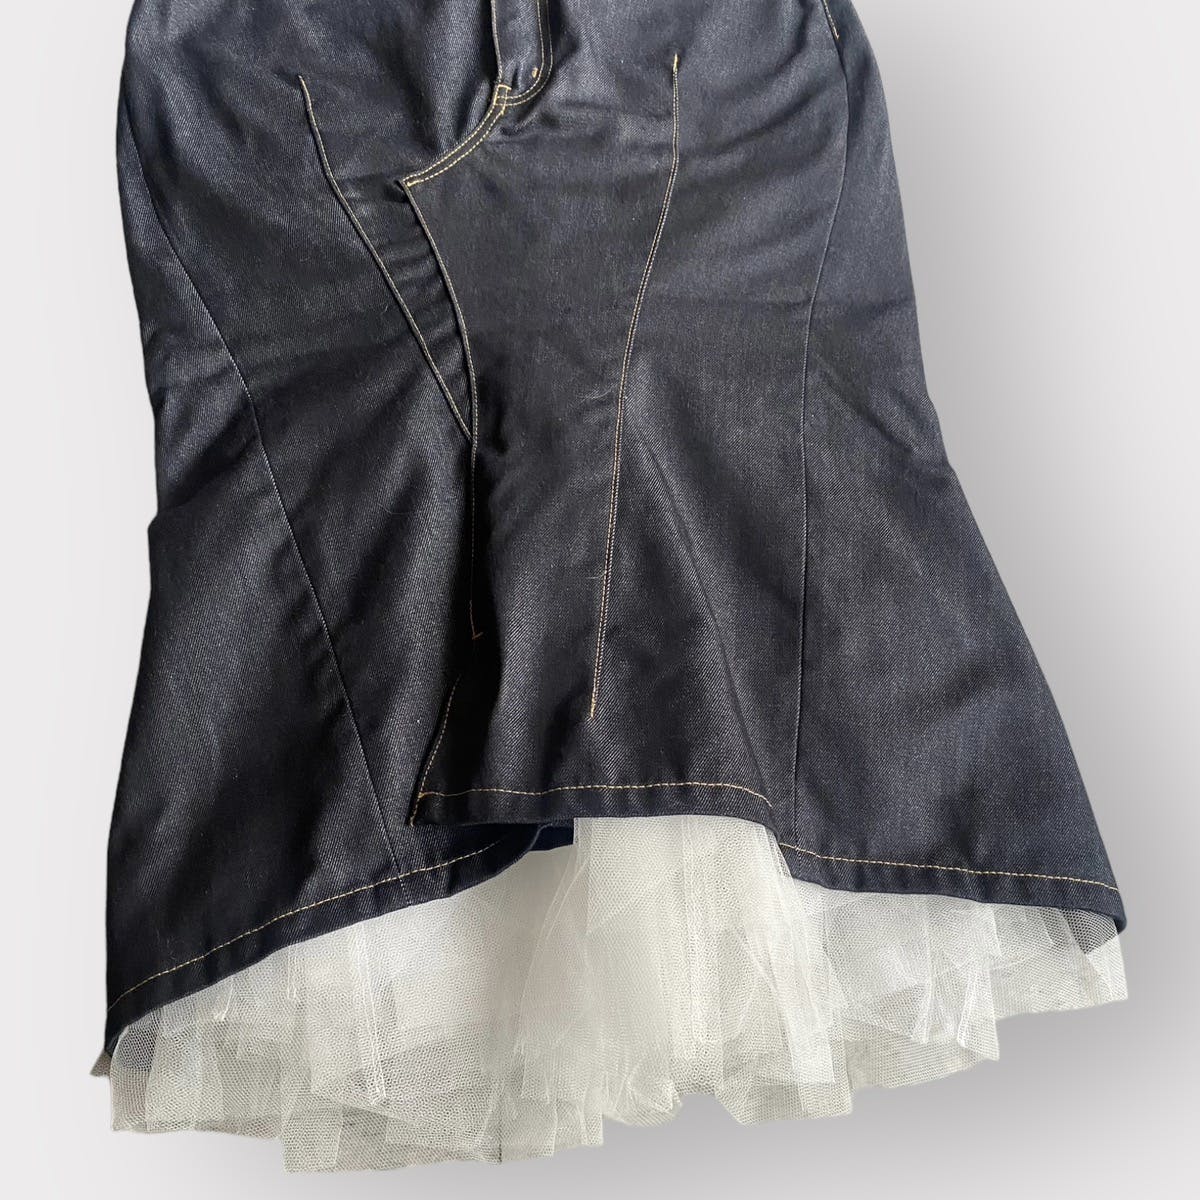 SS19 Deconstructed Denim Skirt - 6